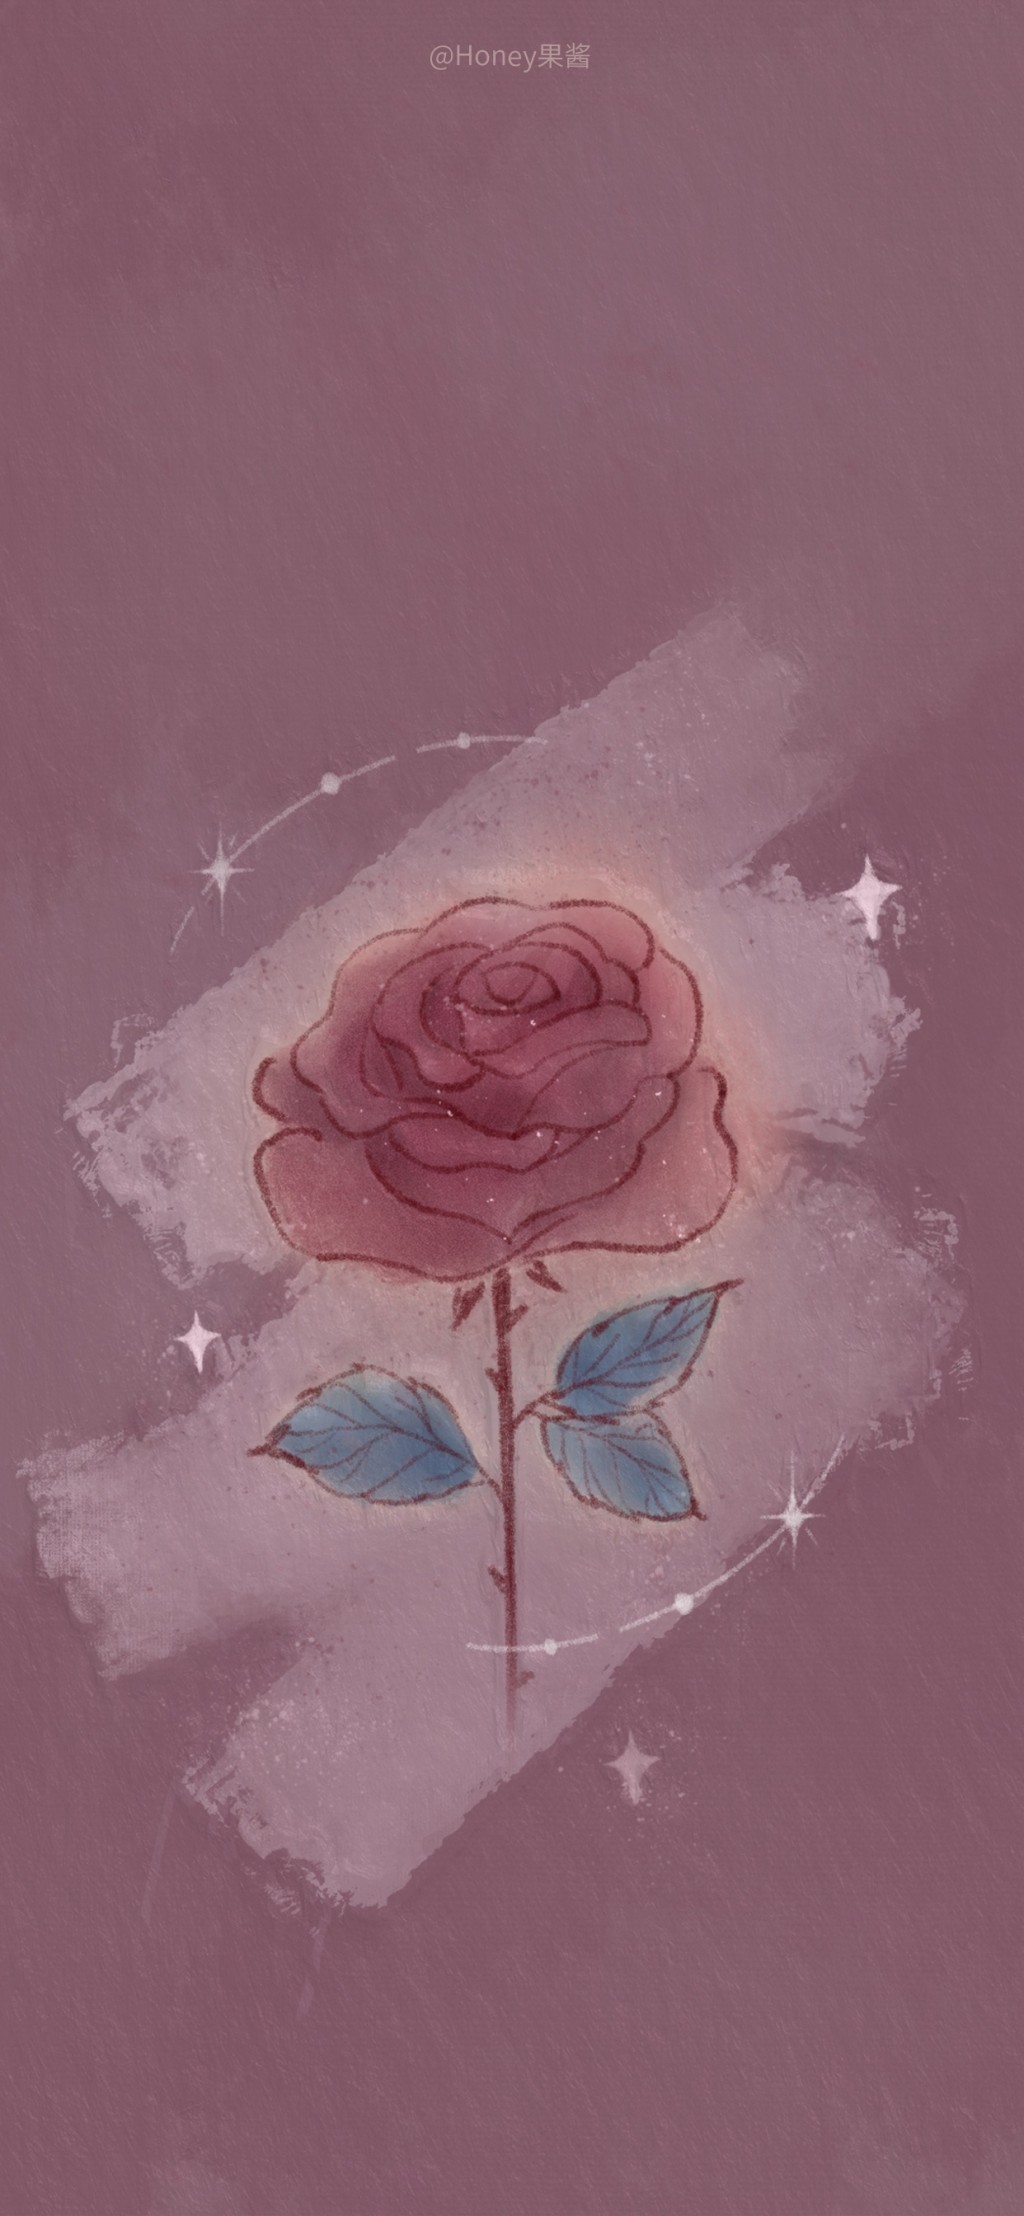 浪漫玫瑰手绘插画手机壁纸